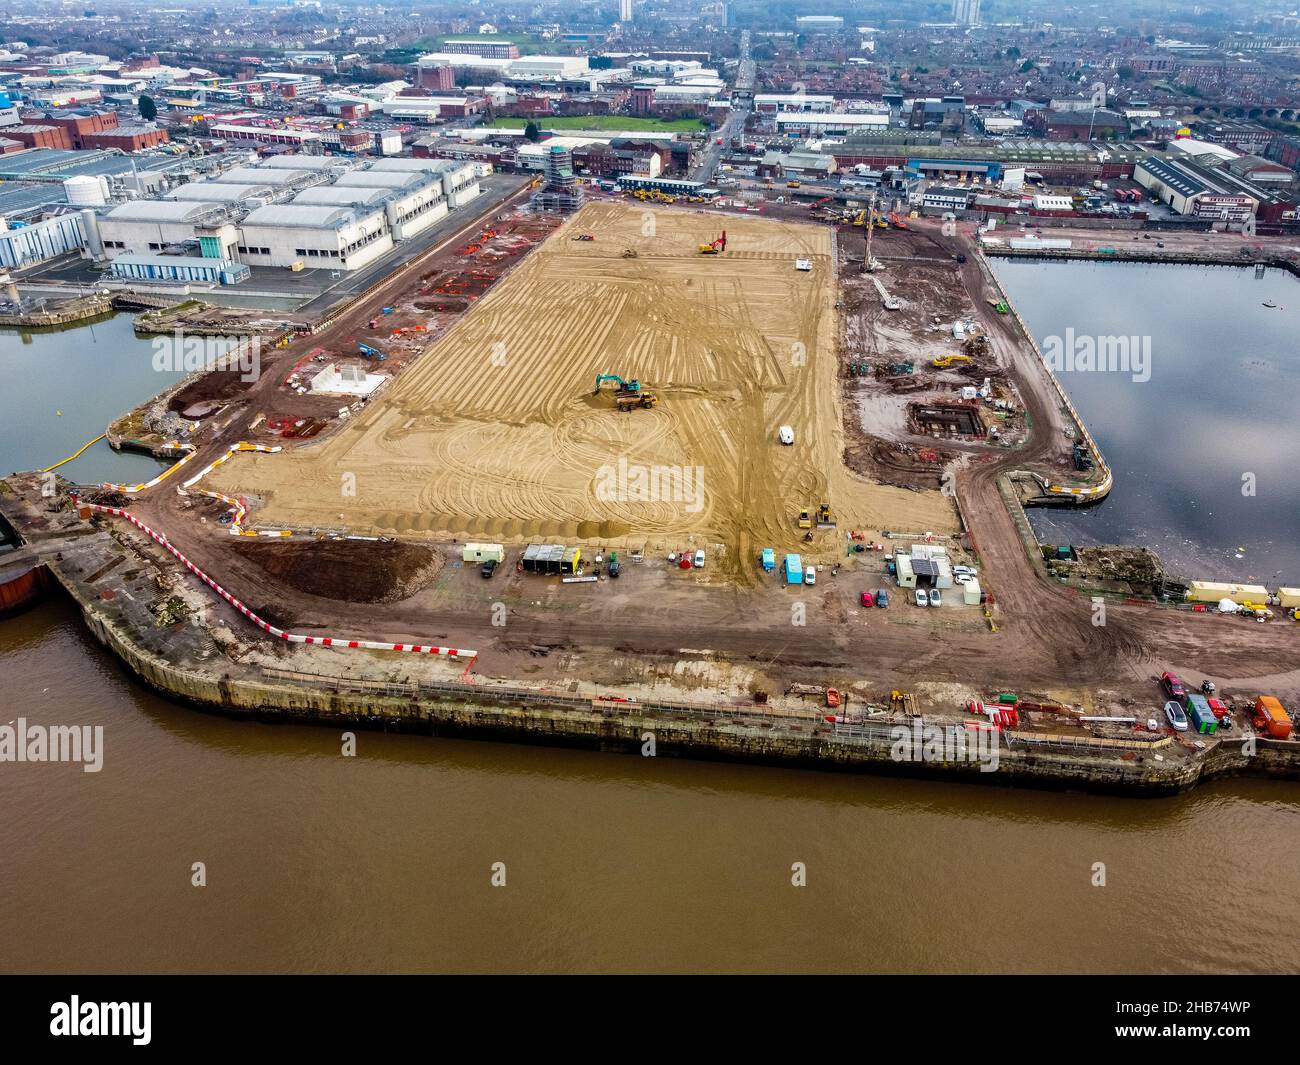 Vue aérienne des travaux de construction sur le site du nouveau stade du club de football d'Everton en cours de construction au quai de Bramley-Moore.Date de la photo: Vendredi 17 décembre 2021. Banque D'Images